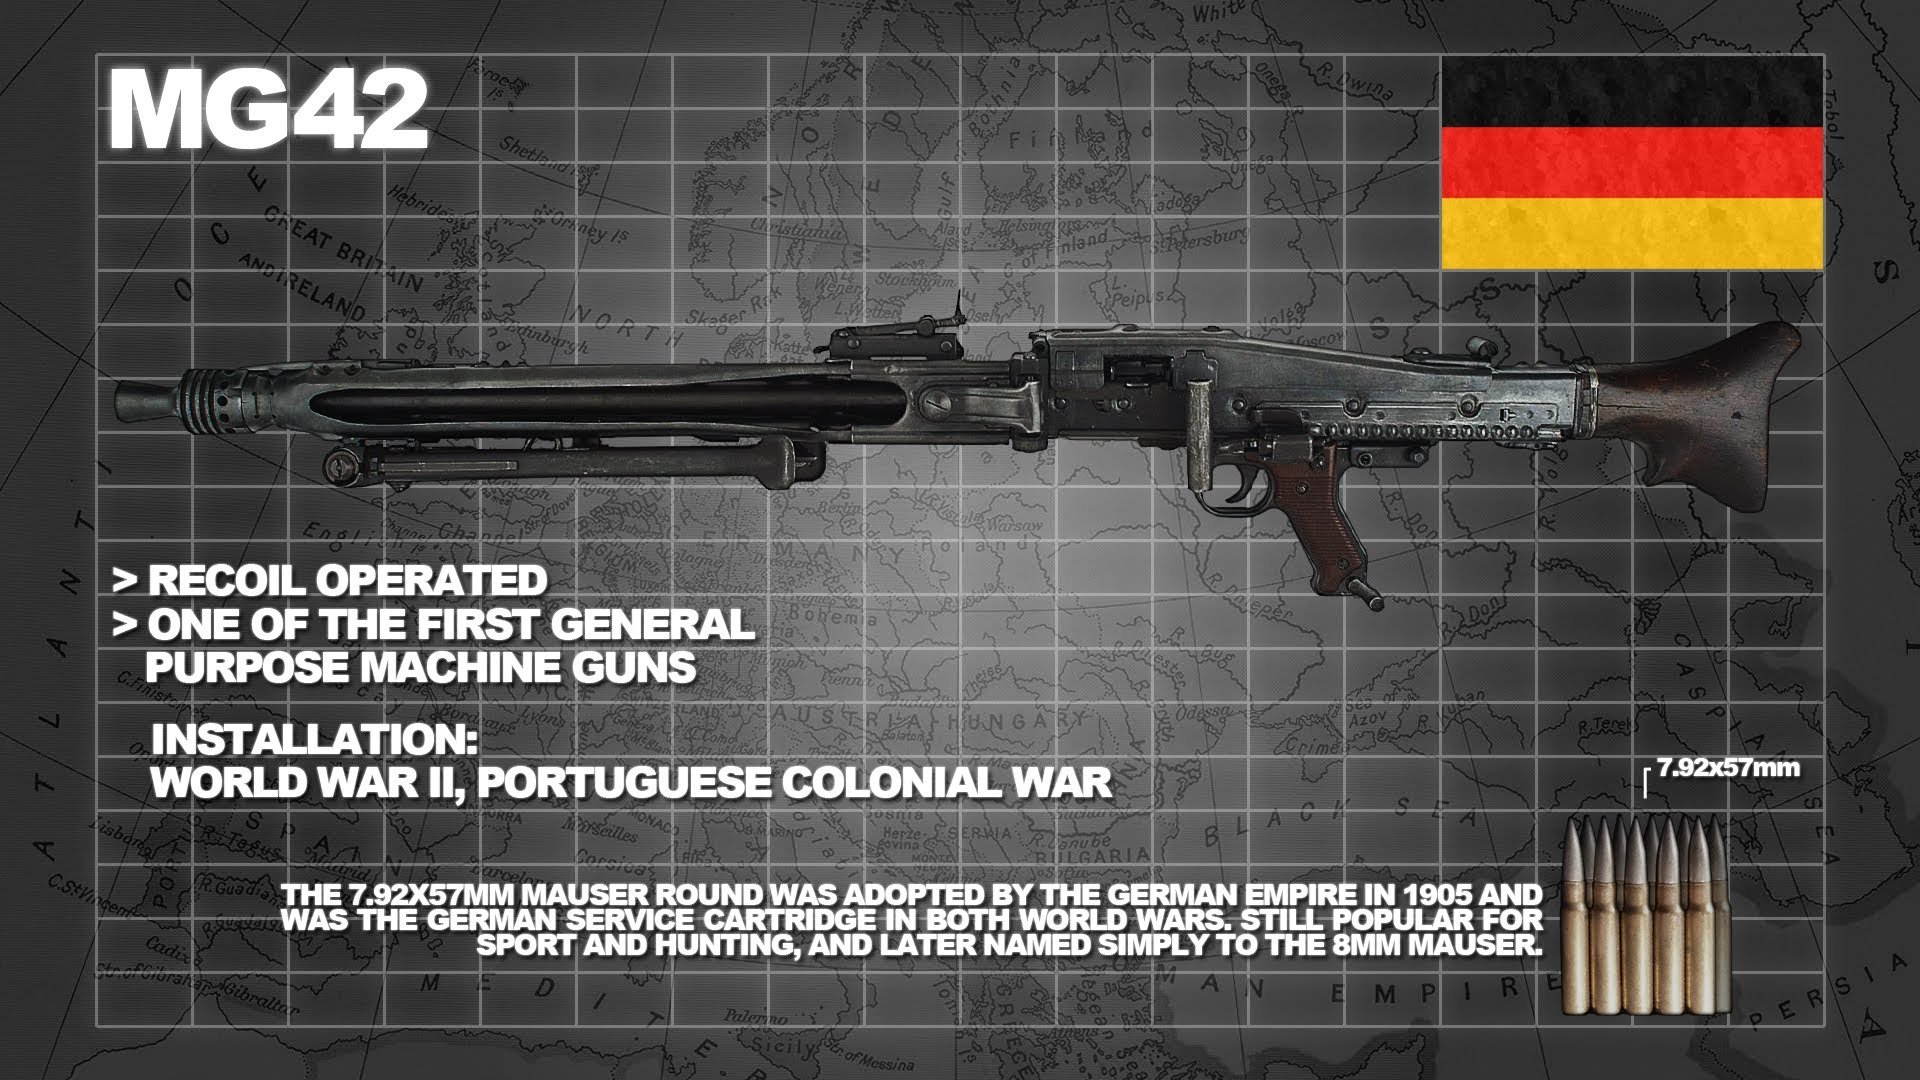 Mg42 Machine Gun Weapon Military Germany Ww2 Wwll